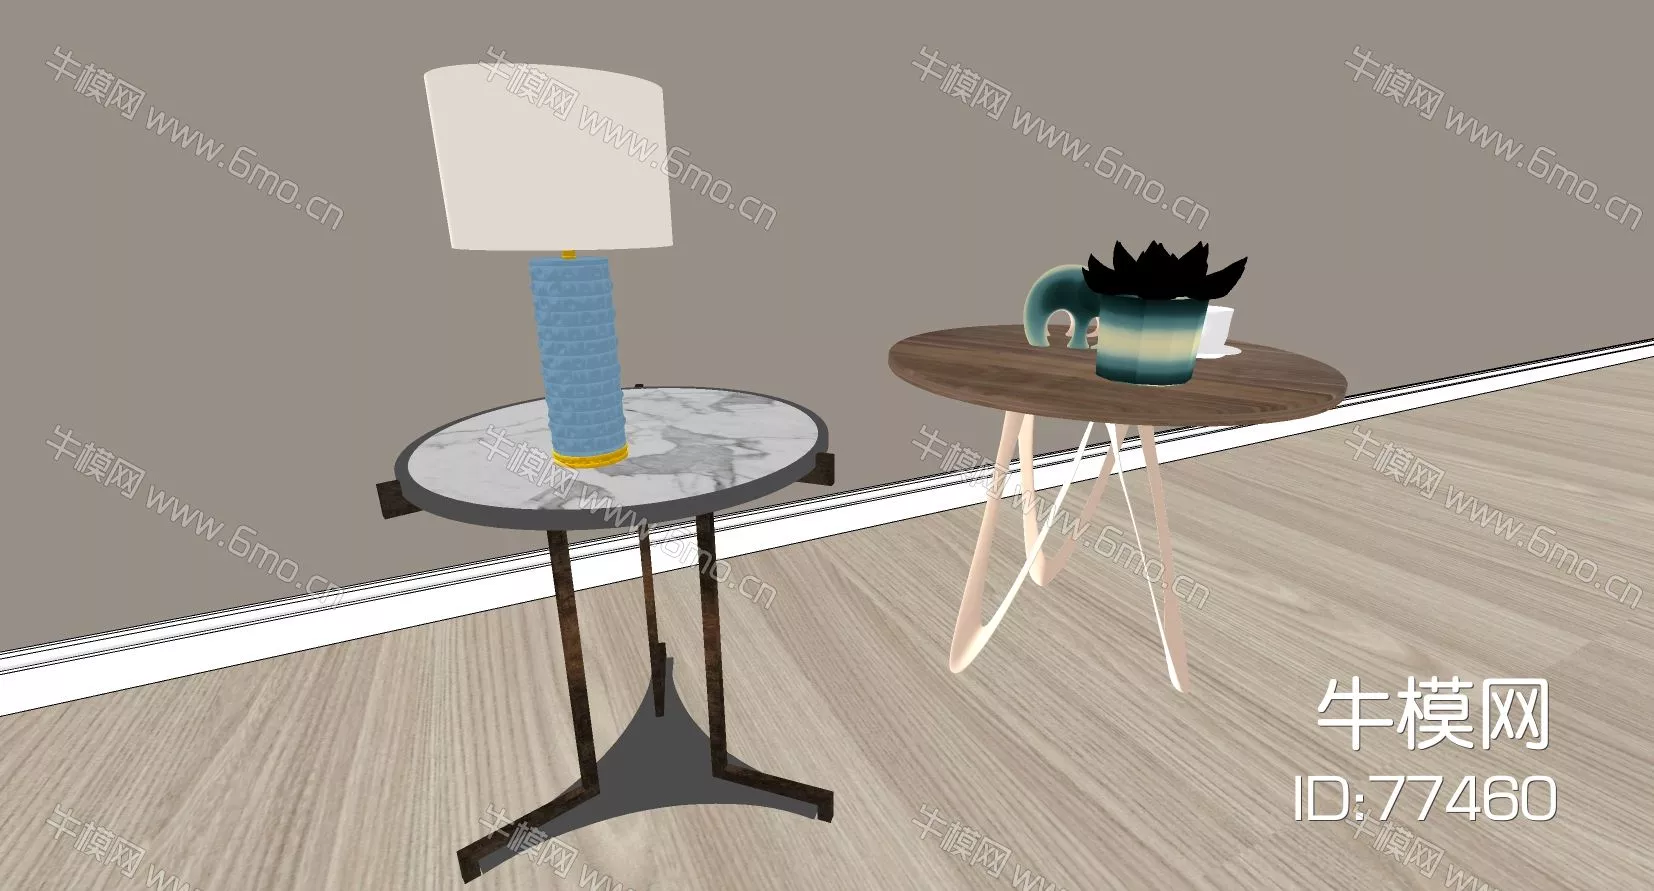 MODERN SIDE TABLE - SKETCHUP 3D MODEL - ENSCAPE - 77460